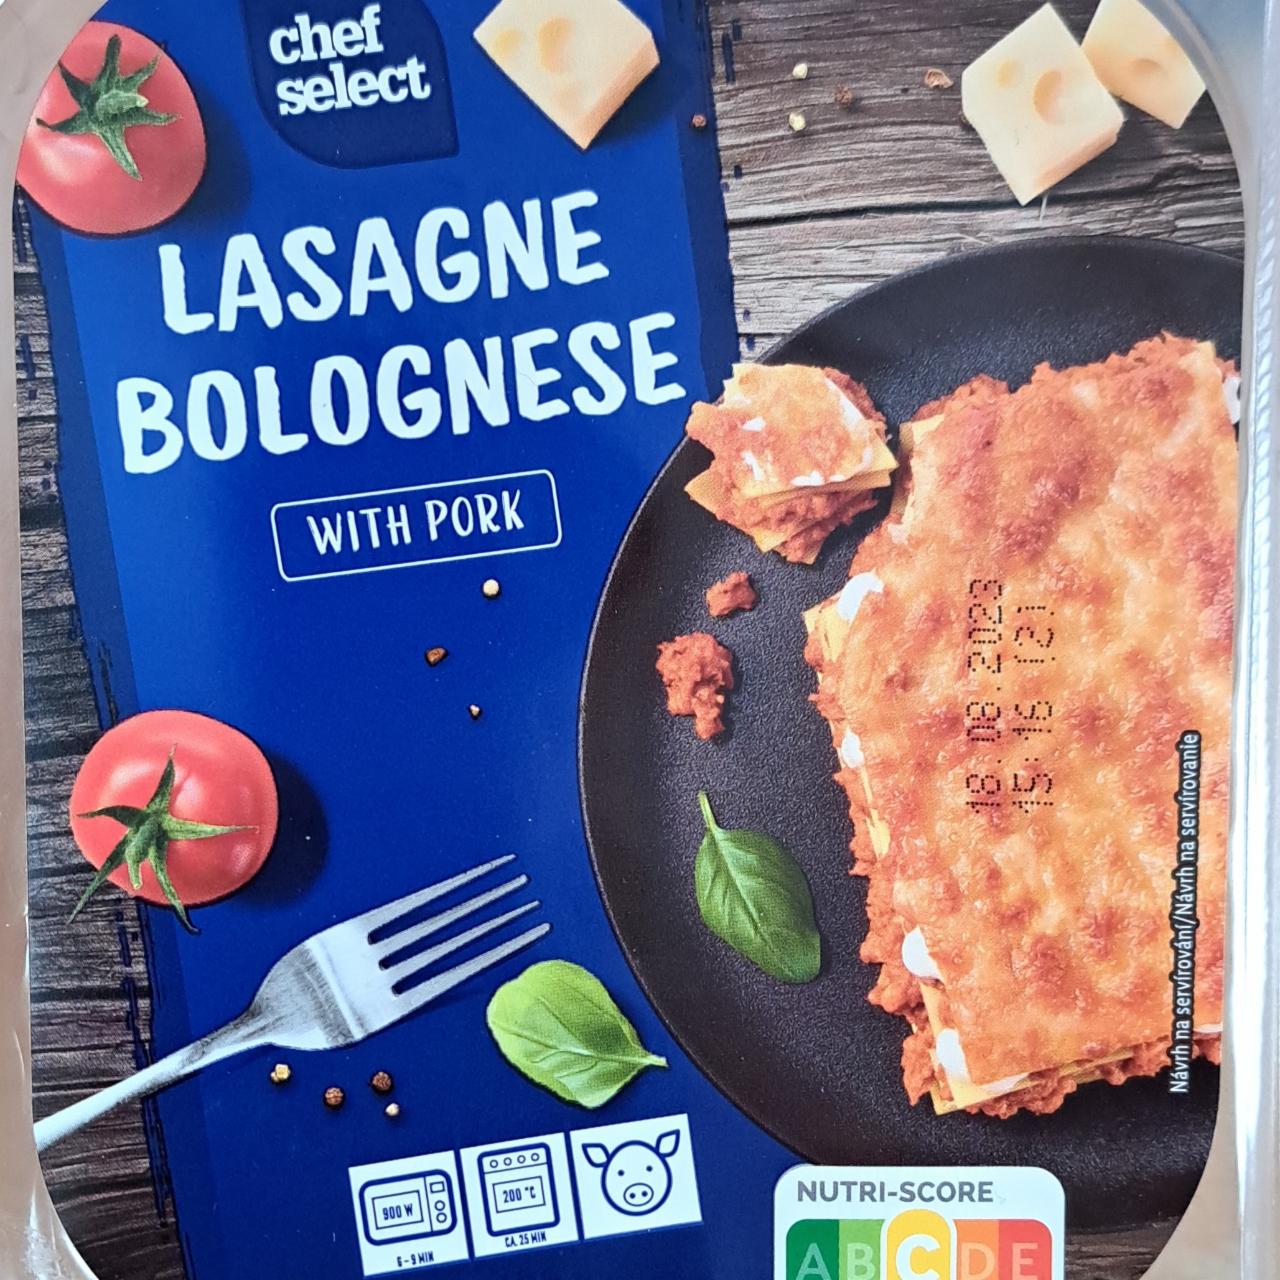 Lasagne Bolognese with Select hodnoty Chef pork kJ - kalorie, nutriční a